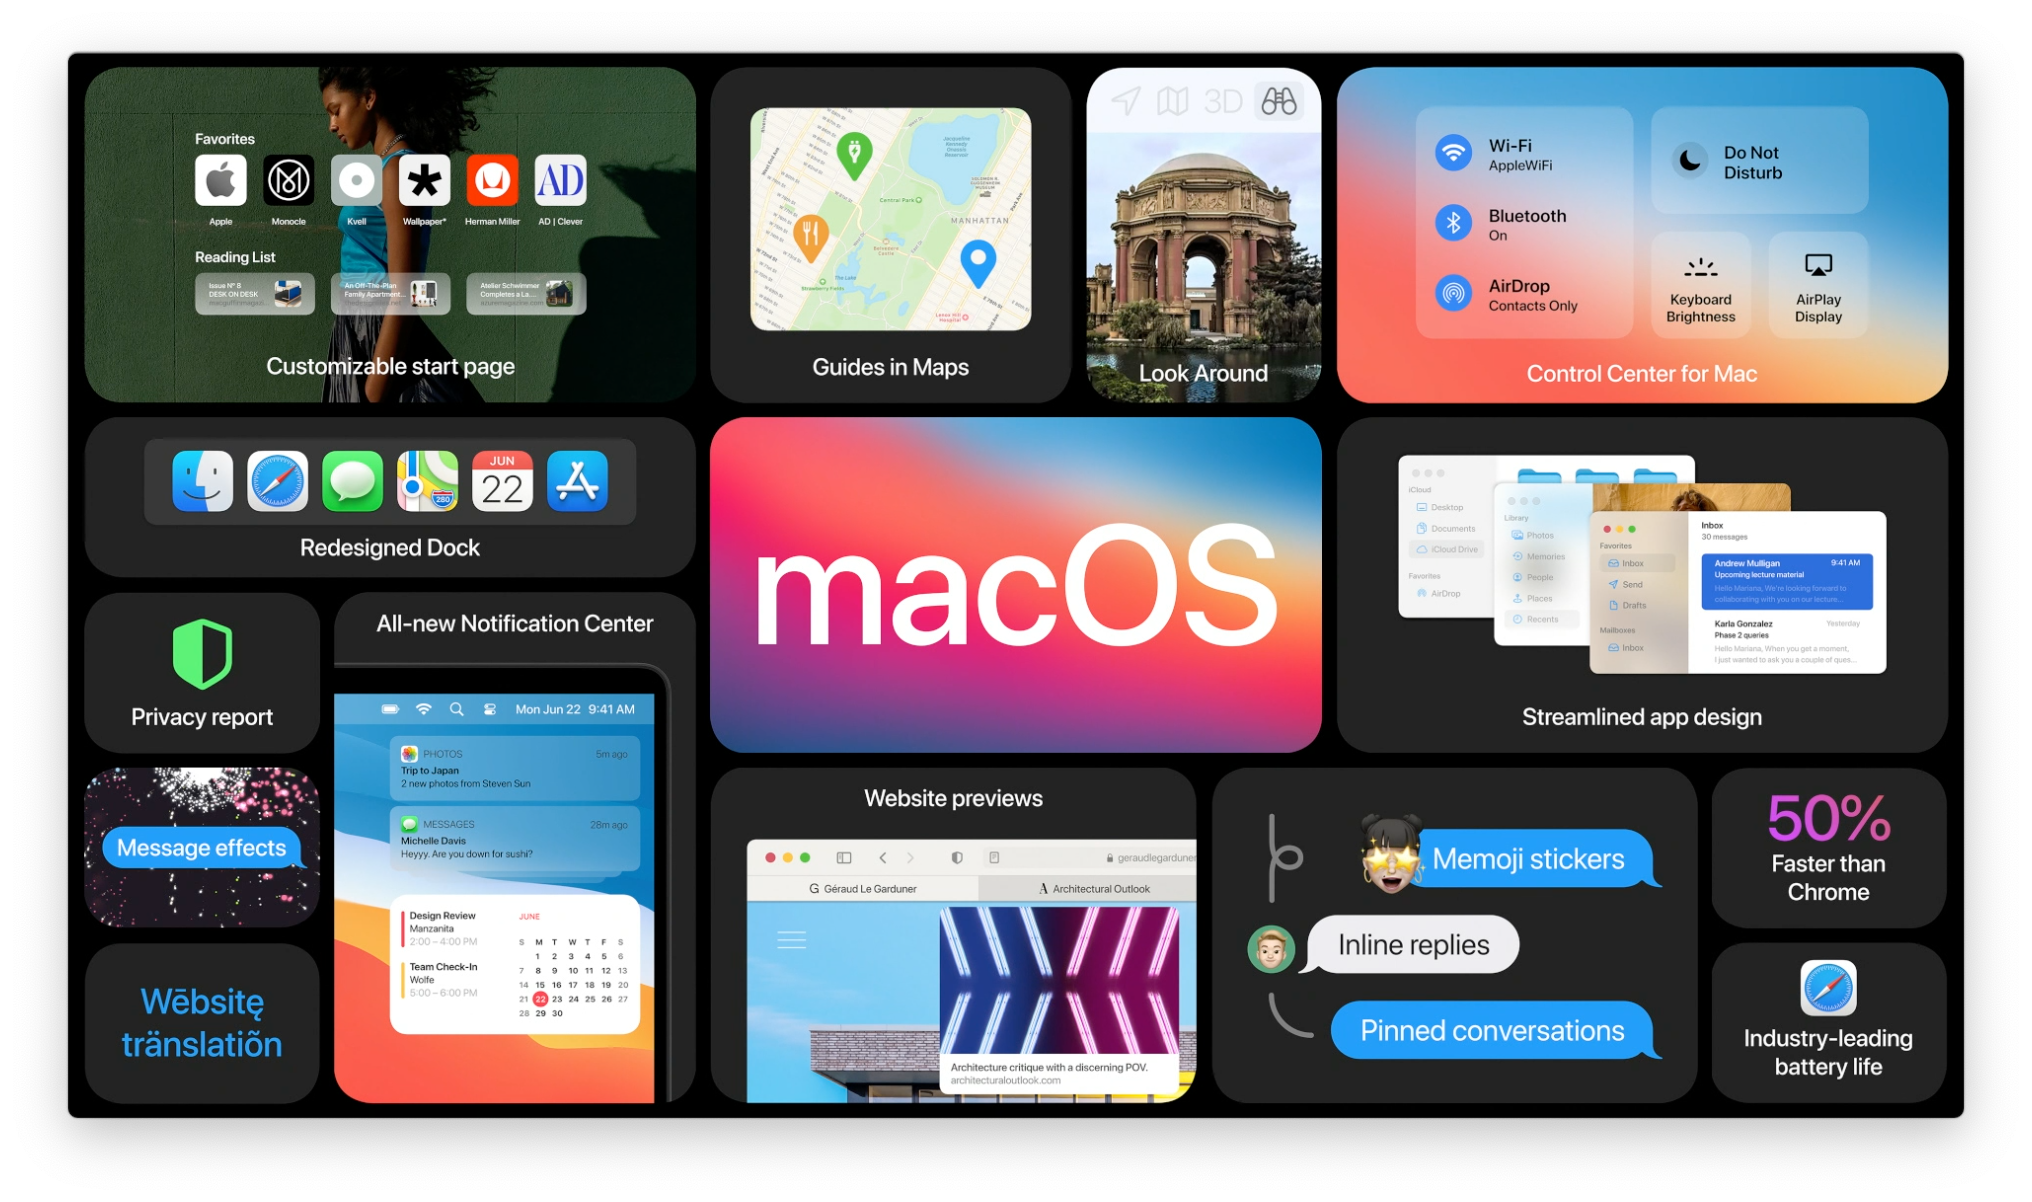 macOS Big Sur summary